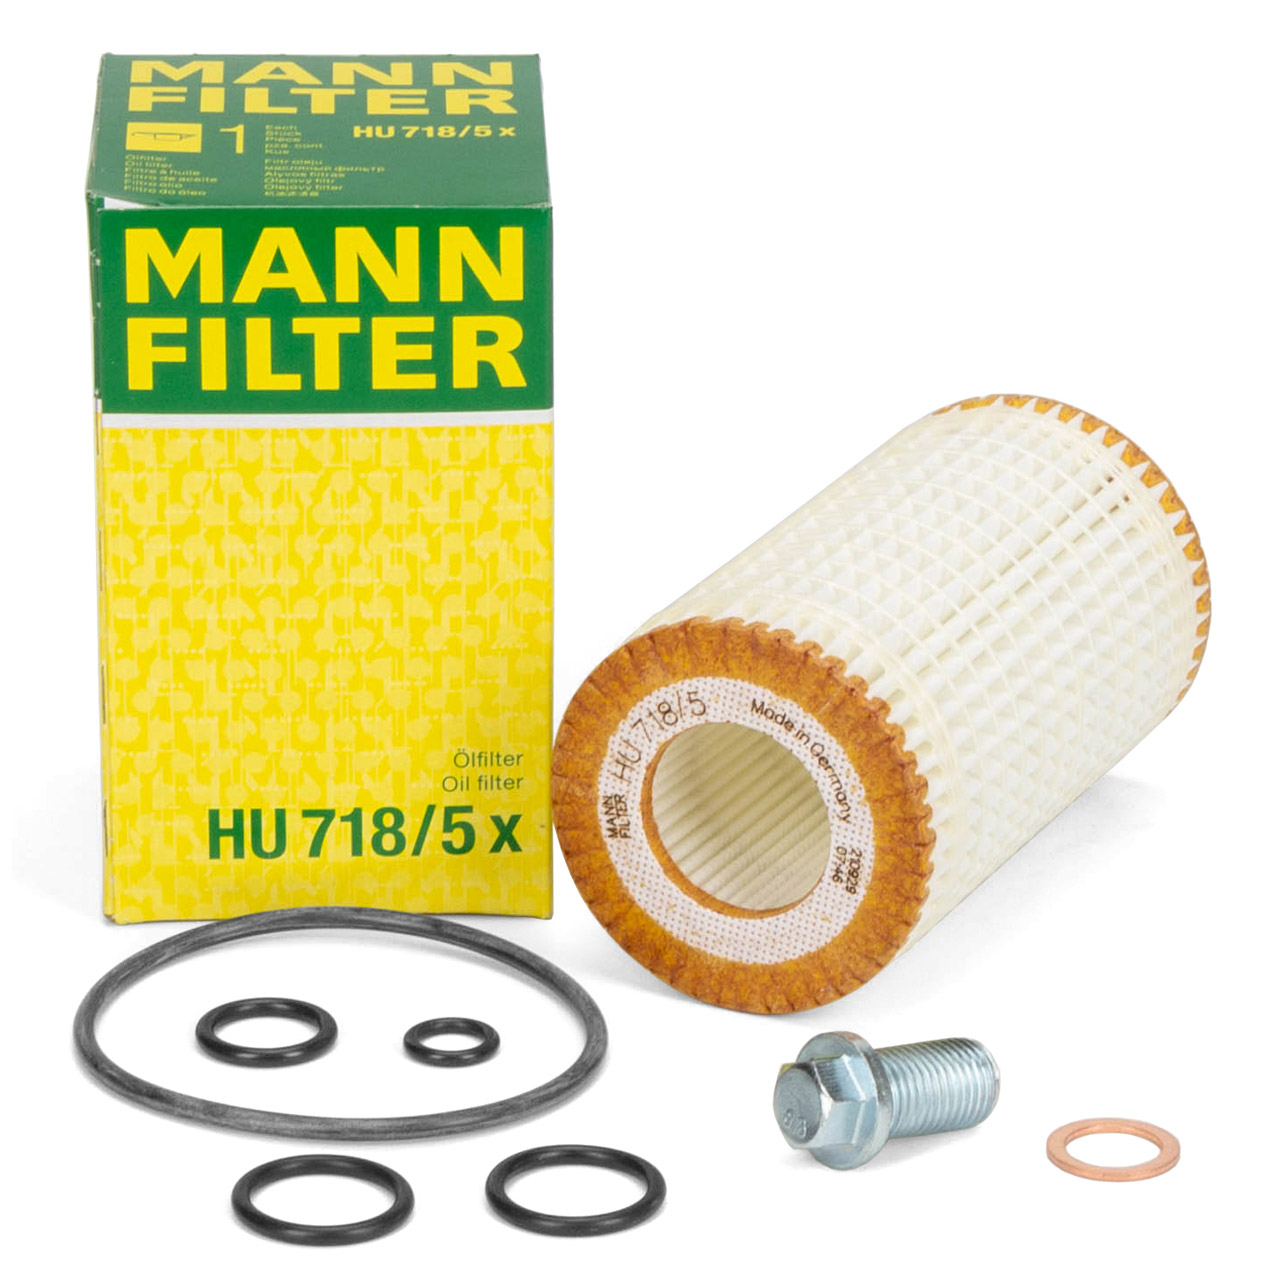 MANN HU718/5X Ölfilter + Schraube MERCEDES W202 W203 W204 W210 W211 W212 M112 M113 M272